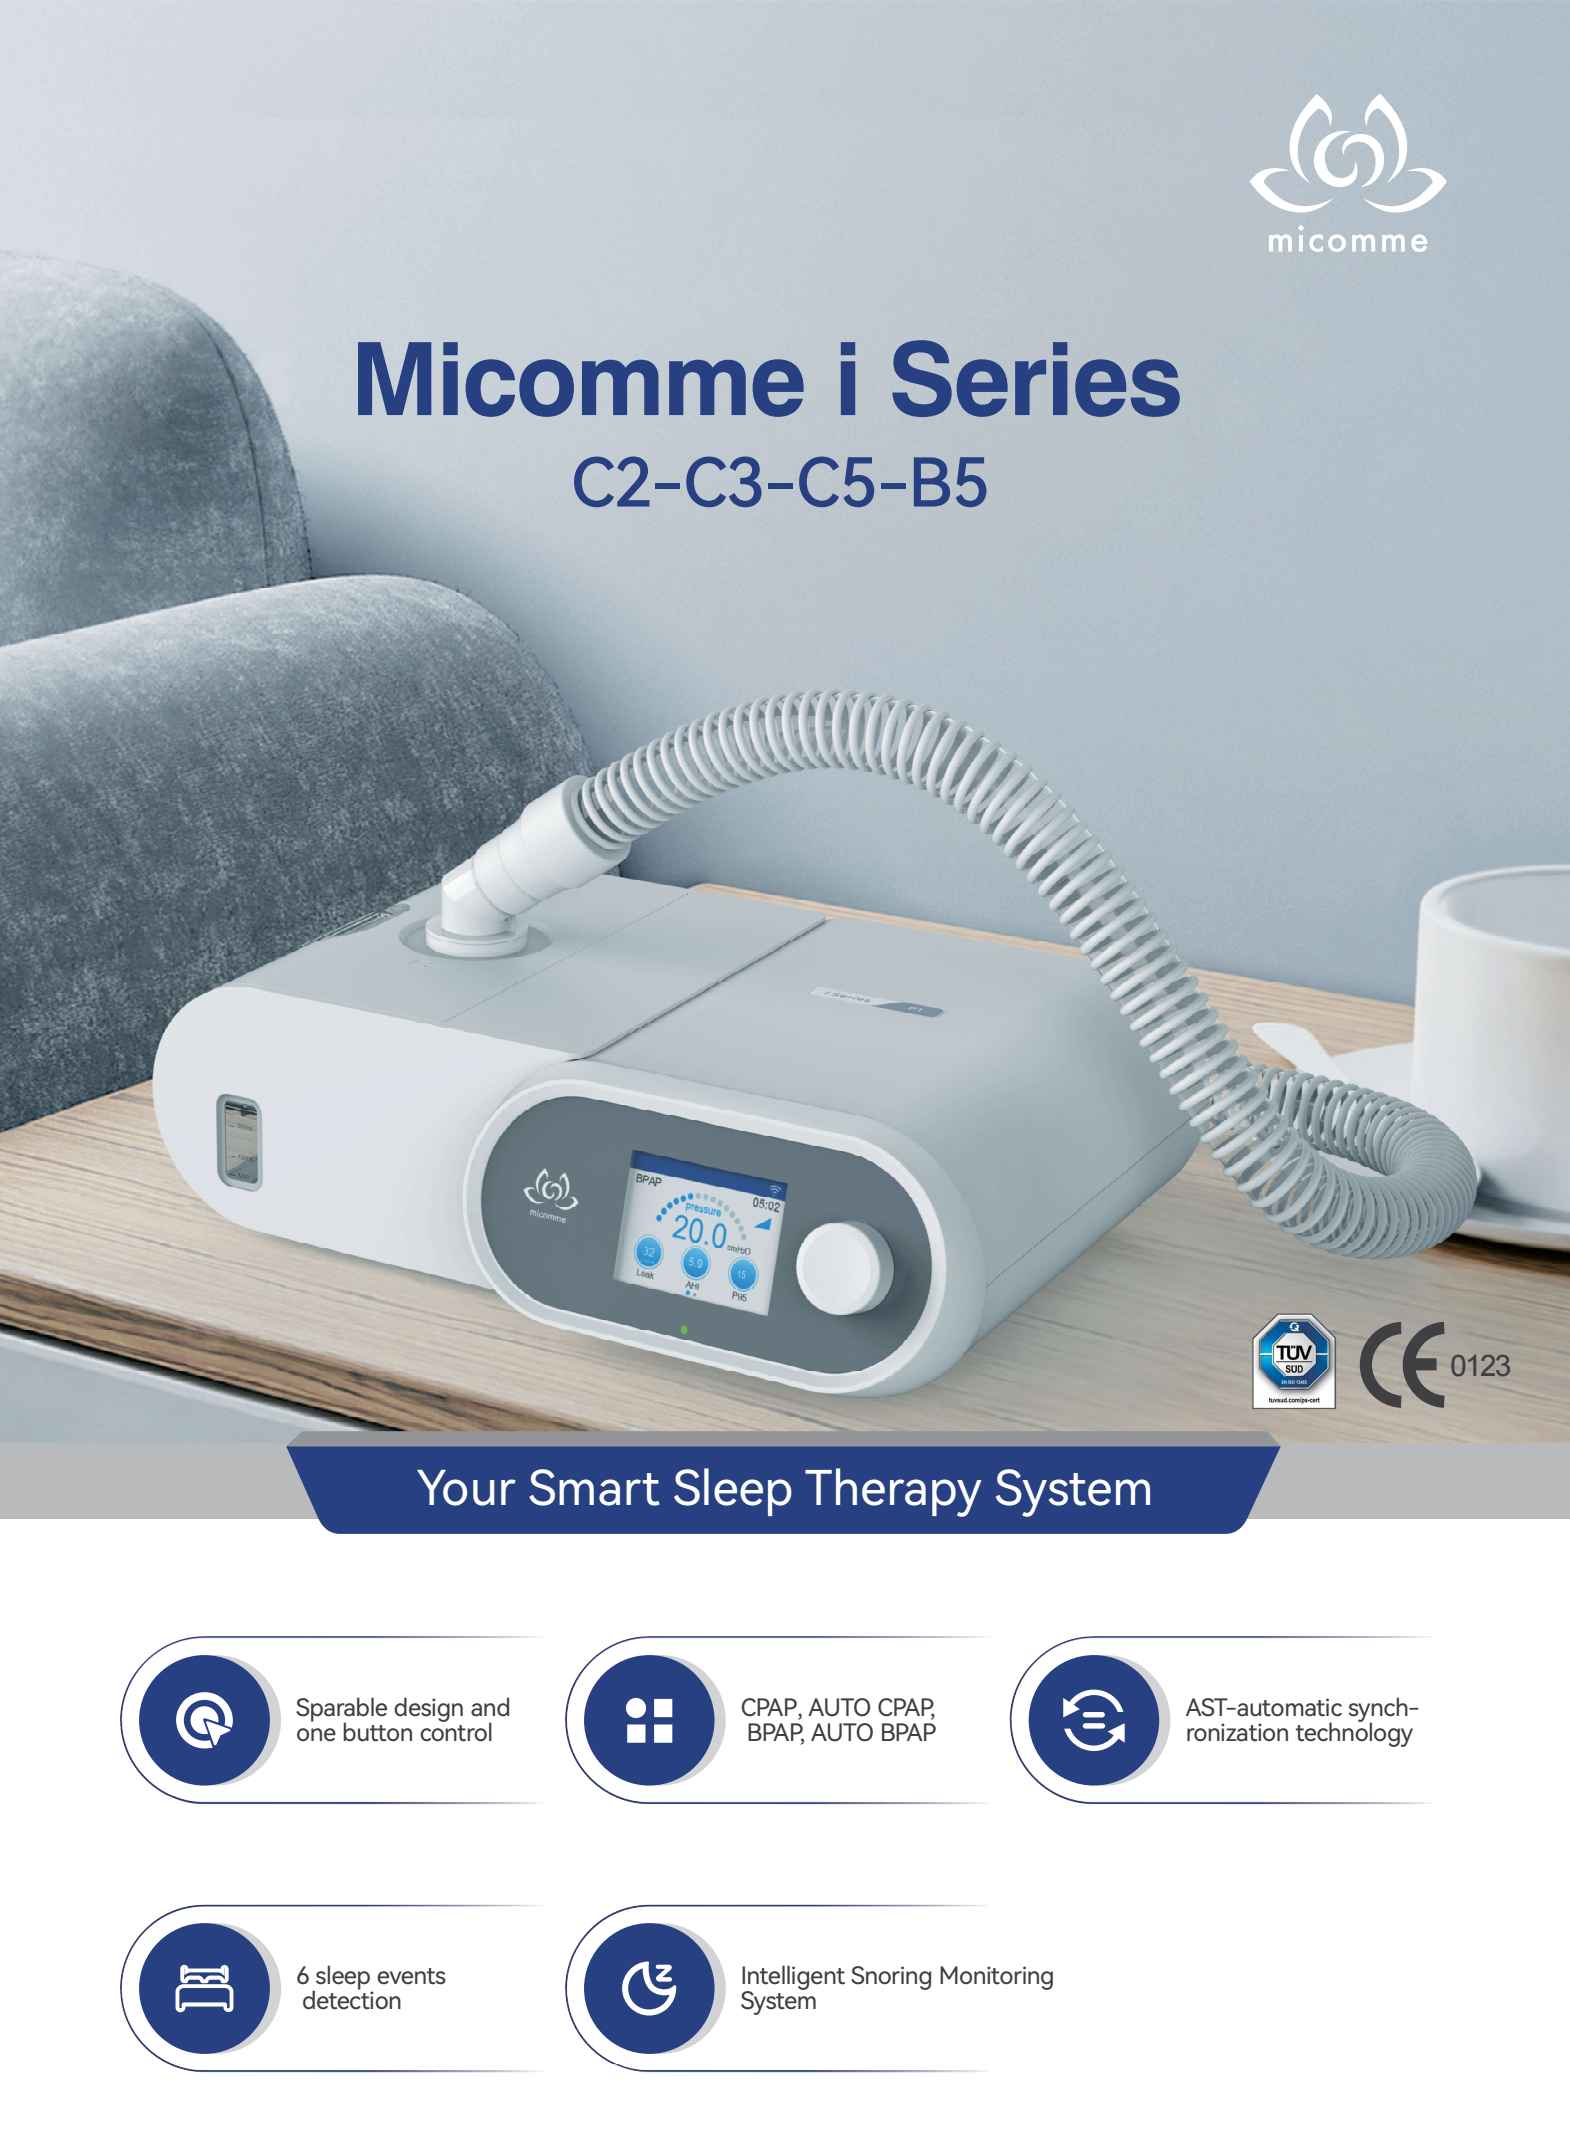 เครื่องช่วยหายใจ (Auto CPAP) Micomme รุ่น C5 ลดการนอนกรน หยุดหายใจขณะหลับ เครื่อง CPAP เครื่องช่วยหายใจชนิดแรงดันบวกต่อเนื่อง เครื่องแก้นอนกรน